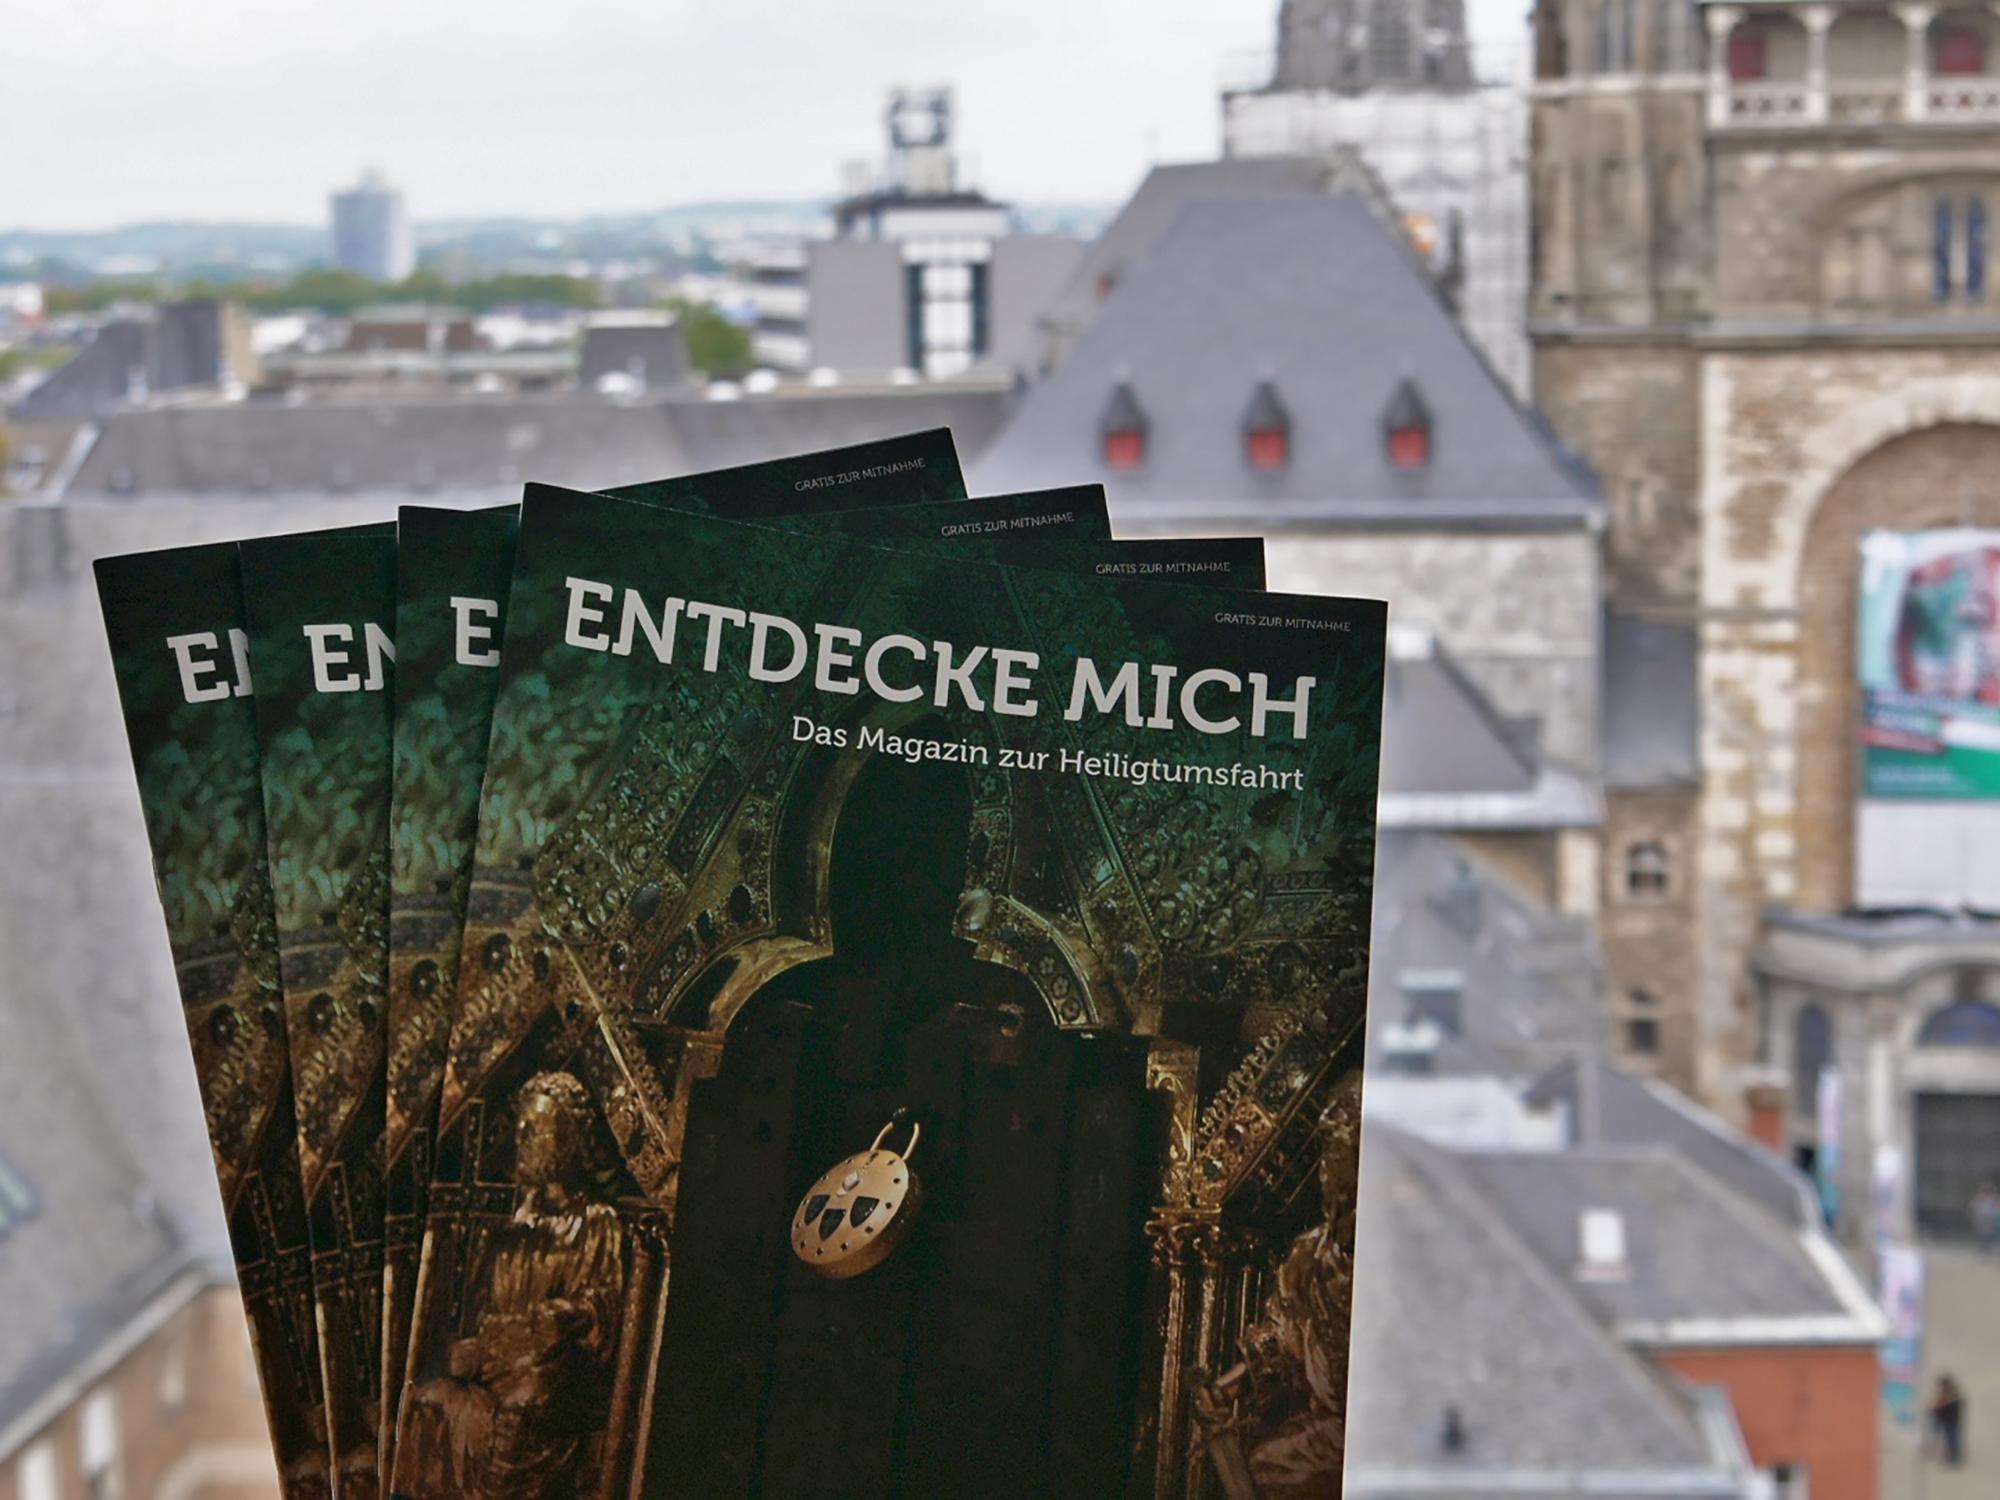 Ein ganzes Magazin rund um die Heiligtumsfahrt Aachen: „Entdecke mich“- lautet der Titel.